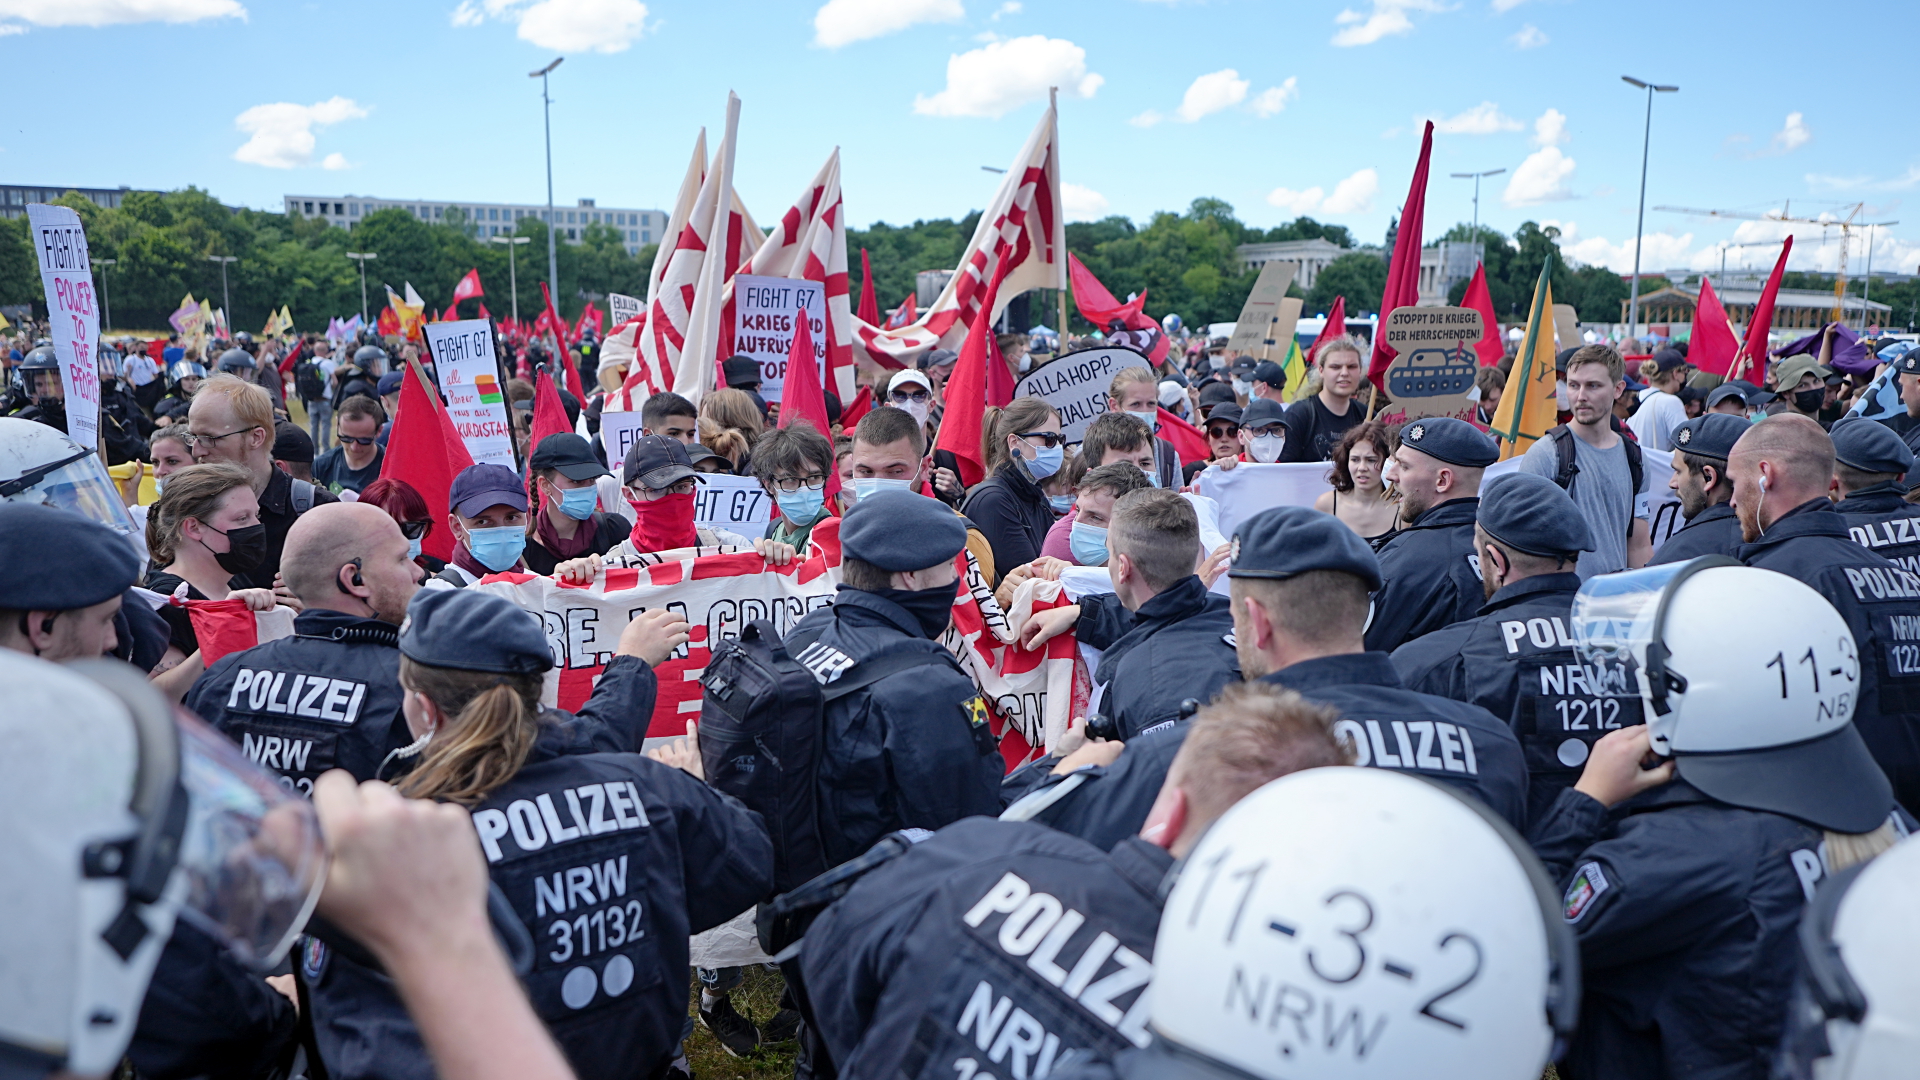 Polizei in München bei Anti-G7-Protest | dpa